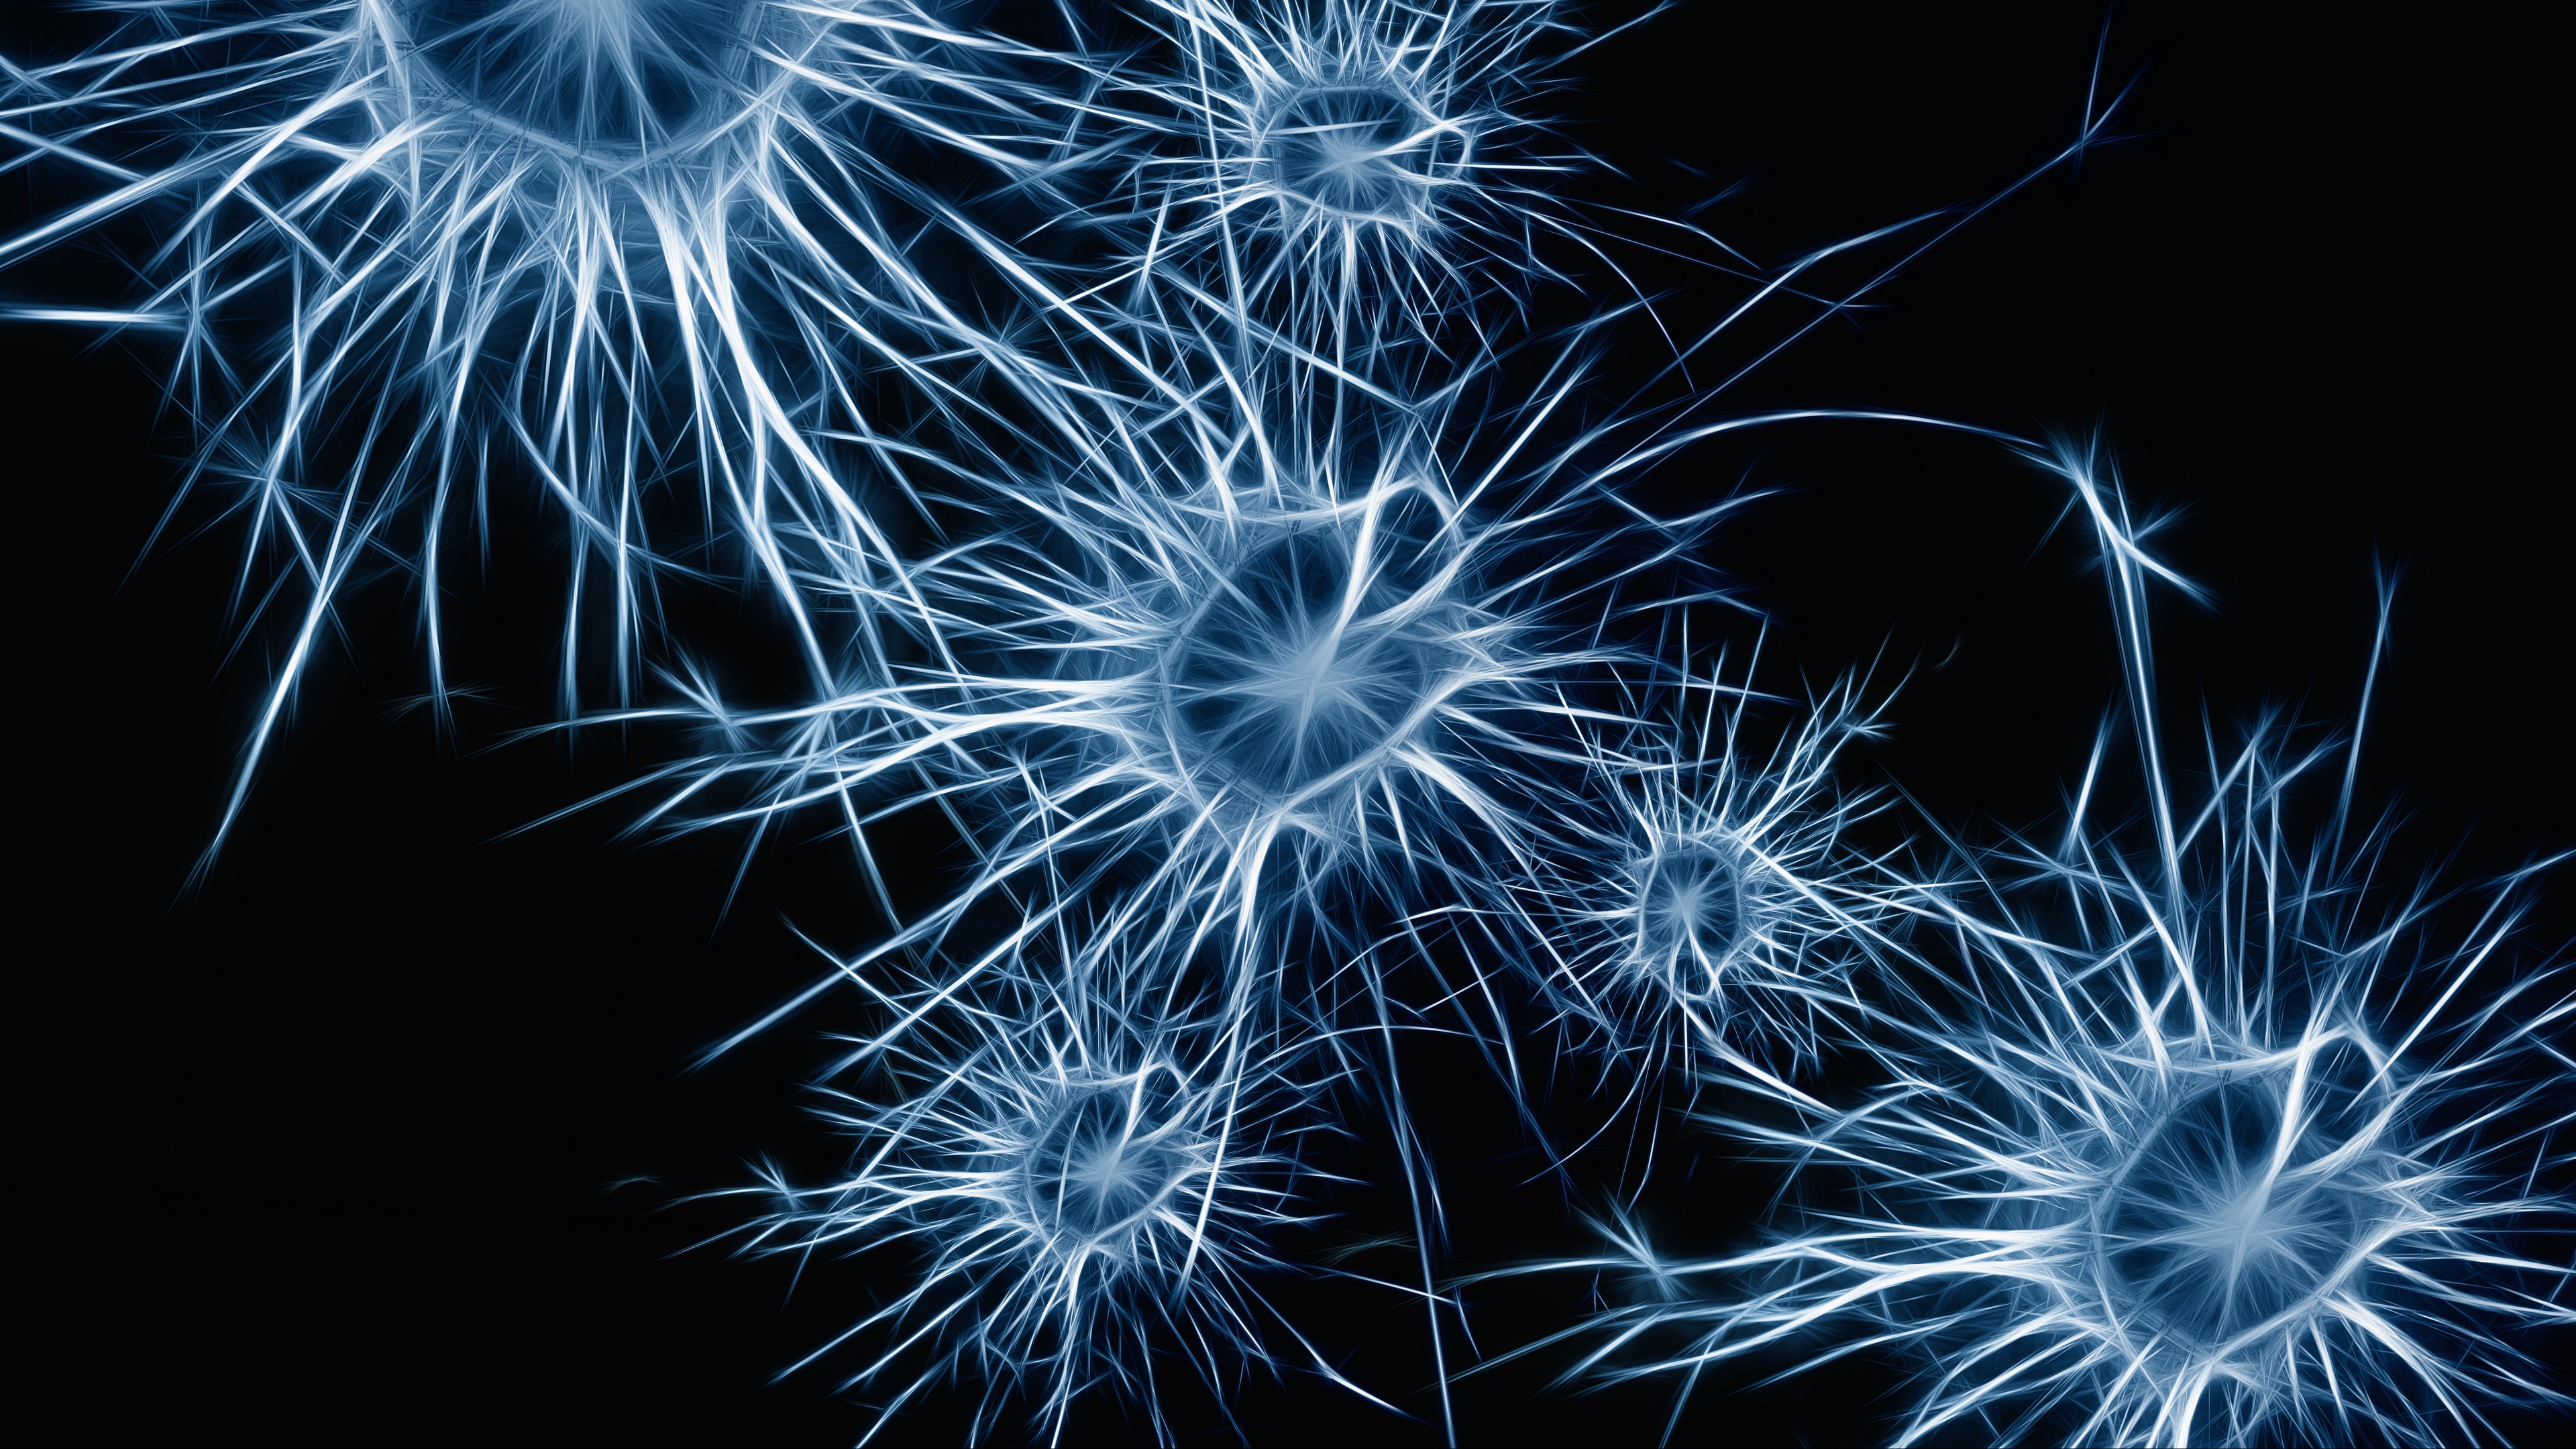 neurons cell structure 4k 1539369634 - neurons, cell, structure 4k - Structure, neurons, Cell